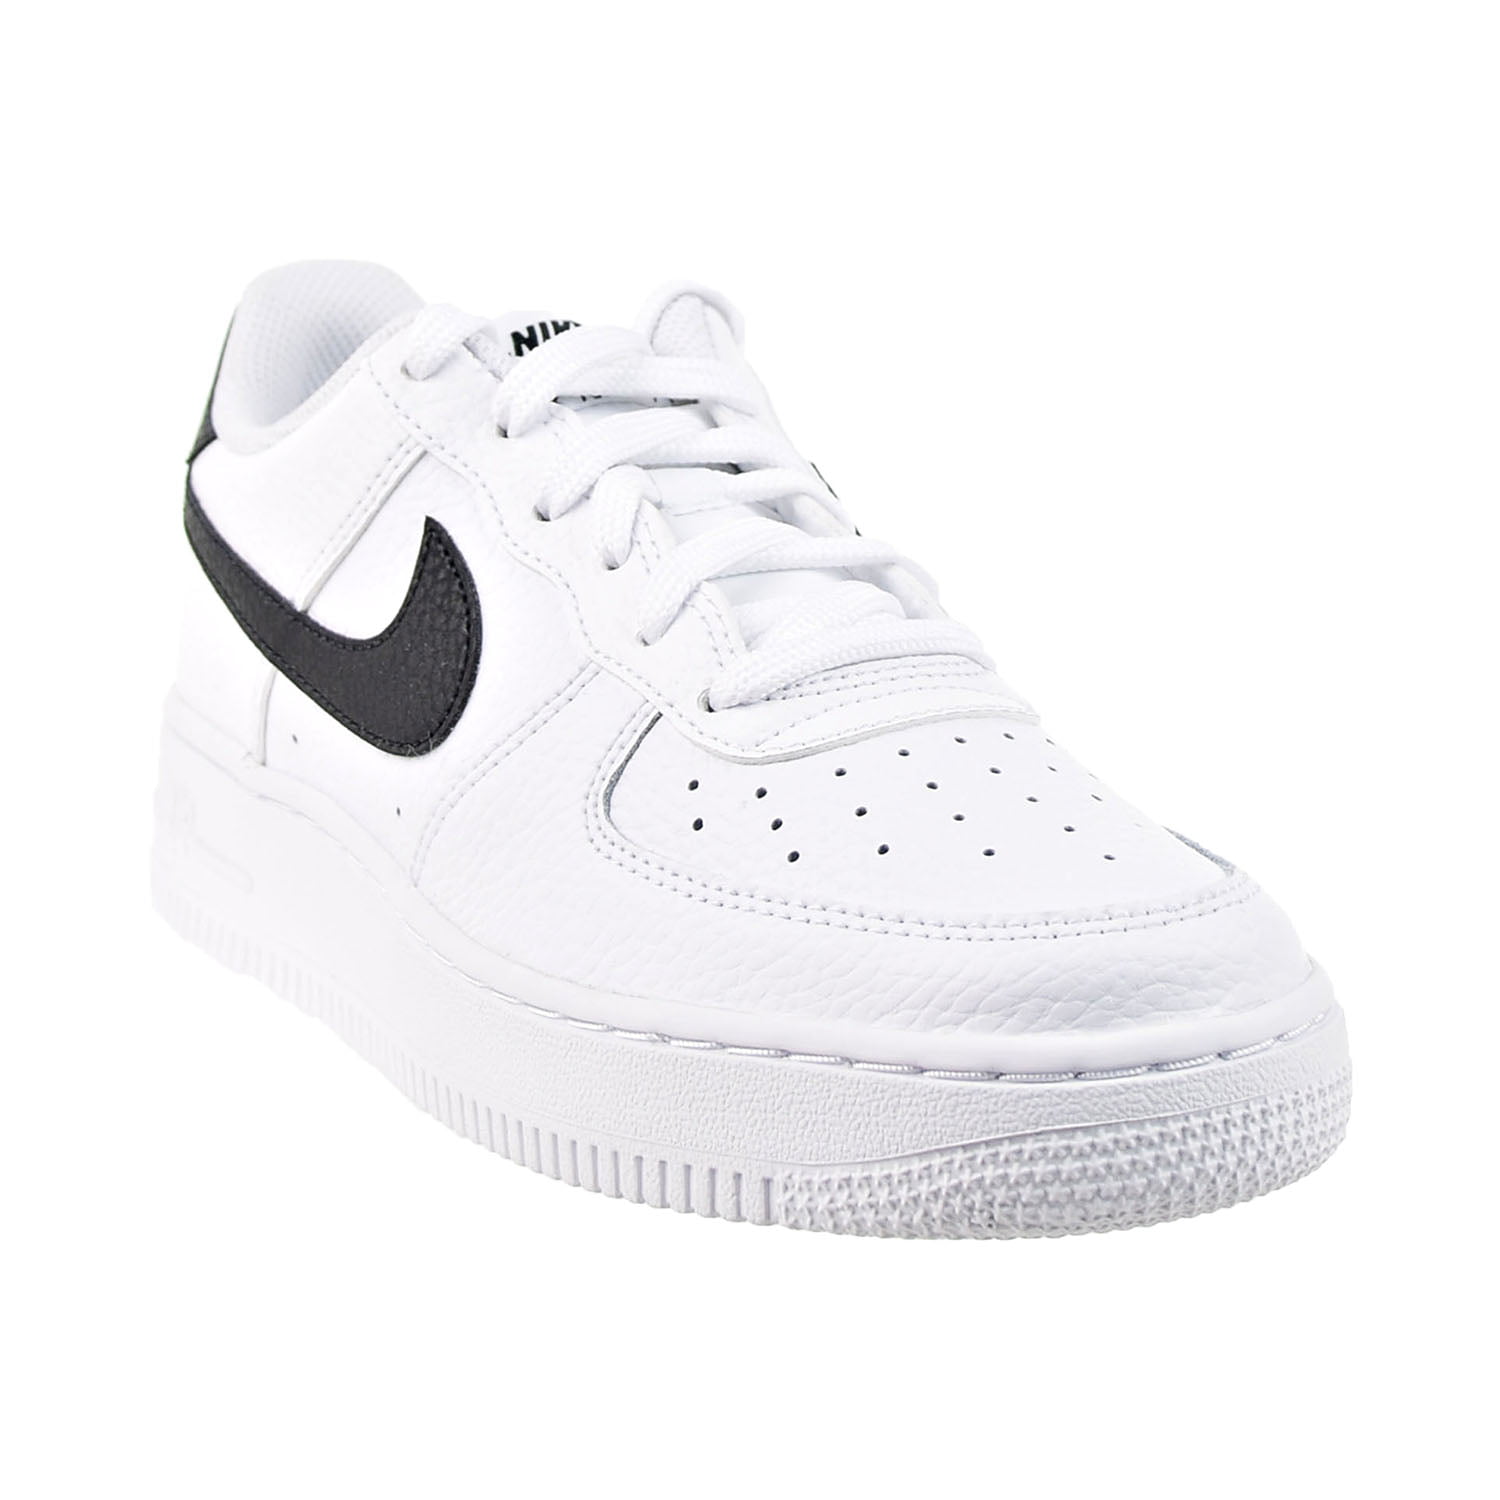 Nike Air Force 1 Ksa GS White Glacier Blue - Size 5.5 Kids